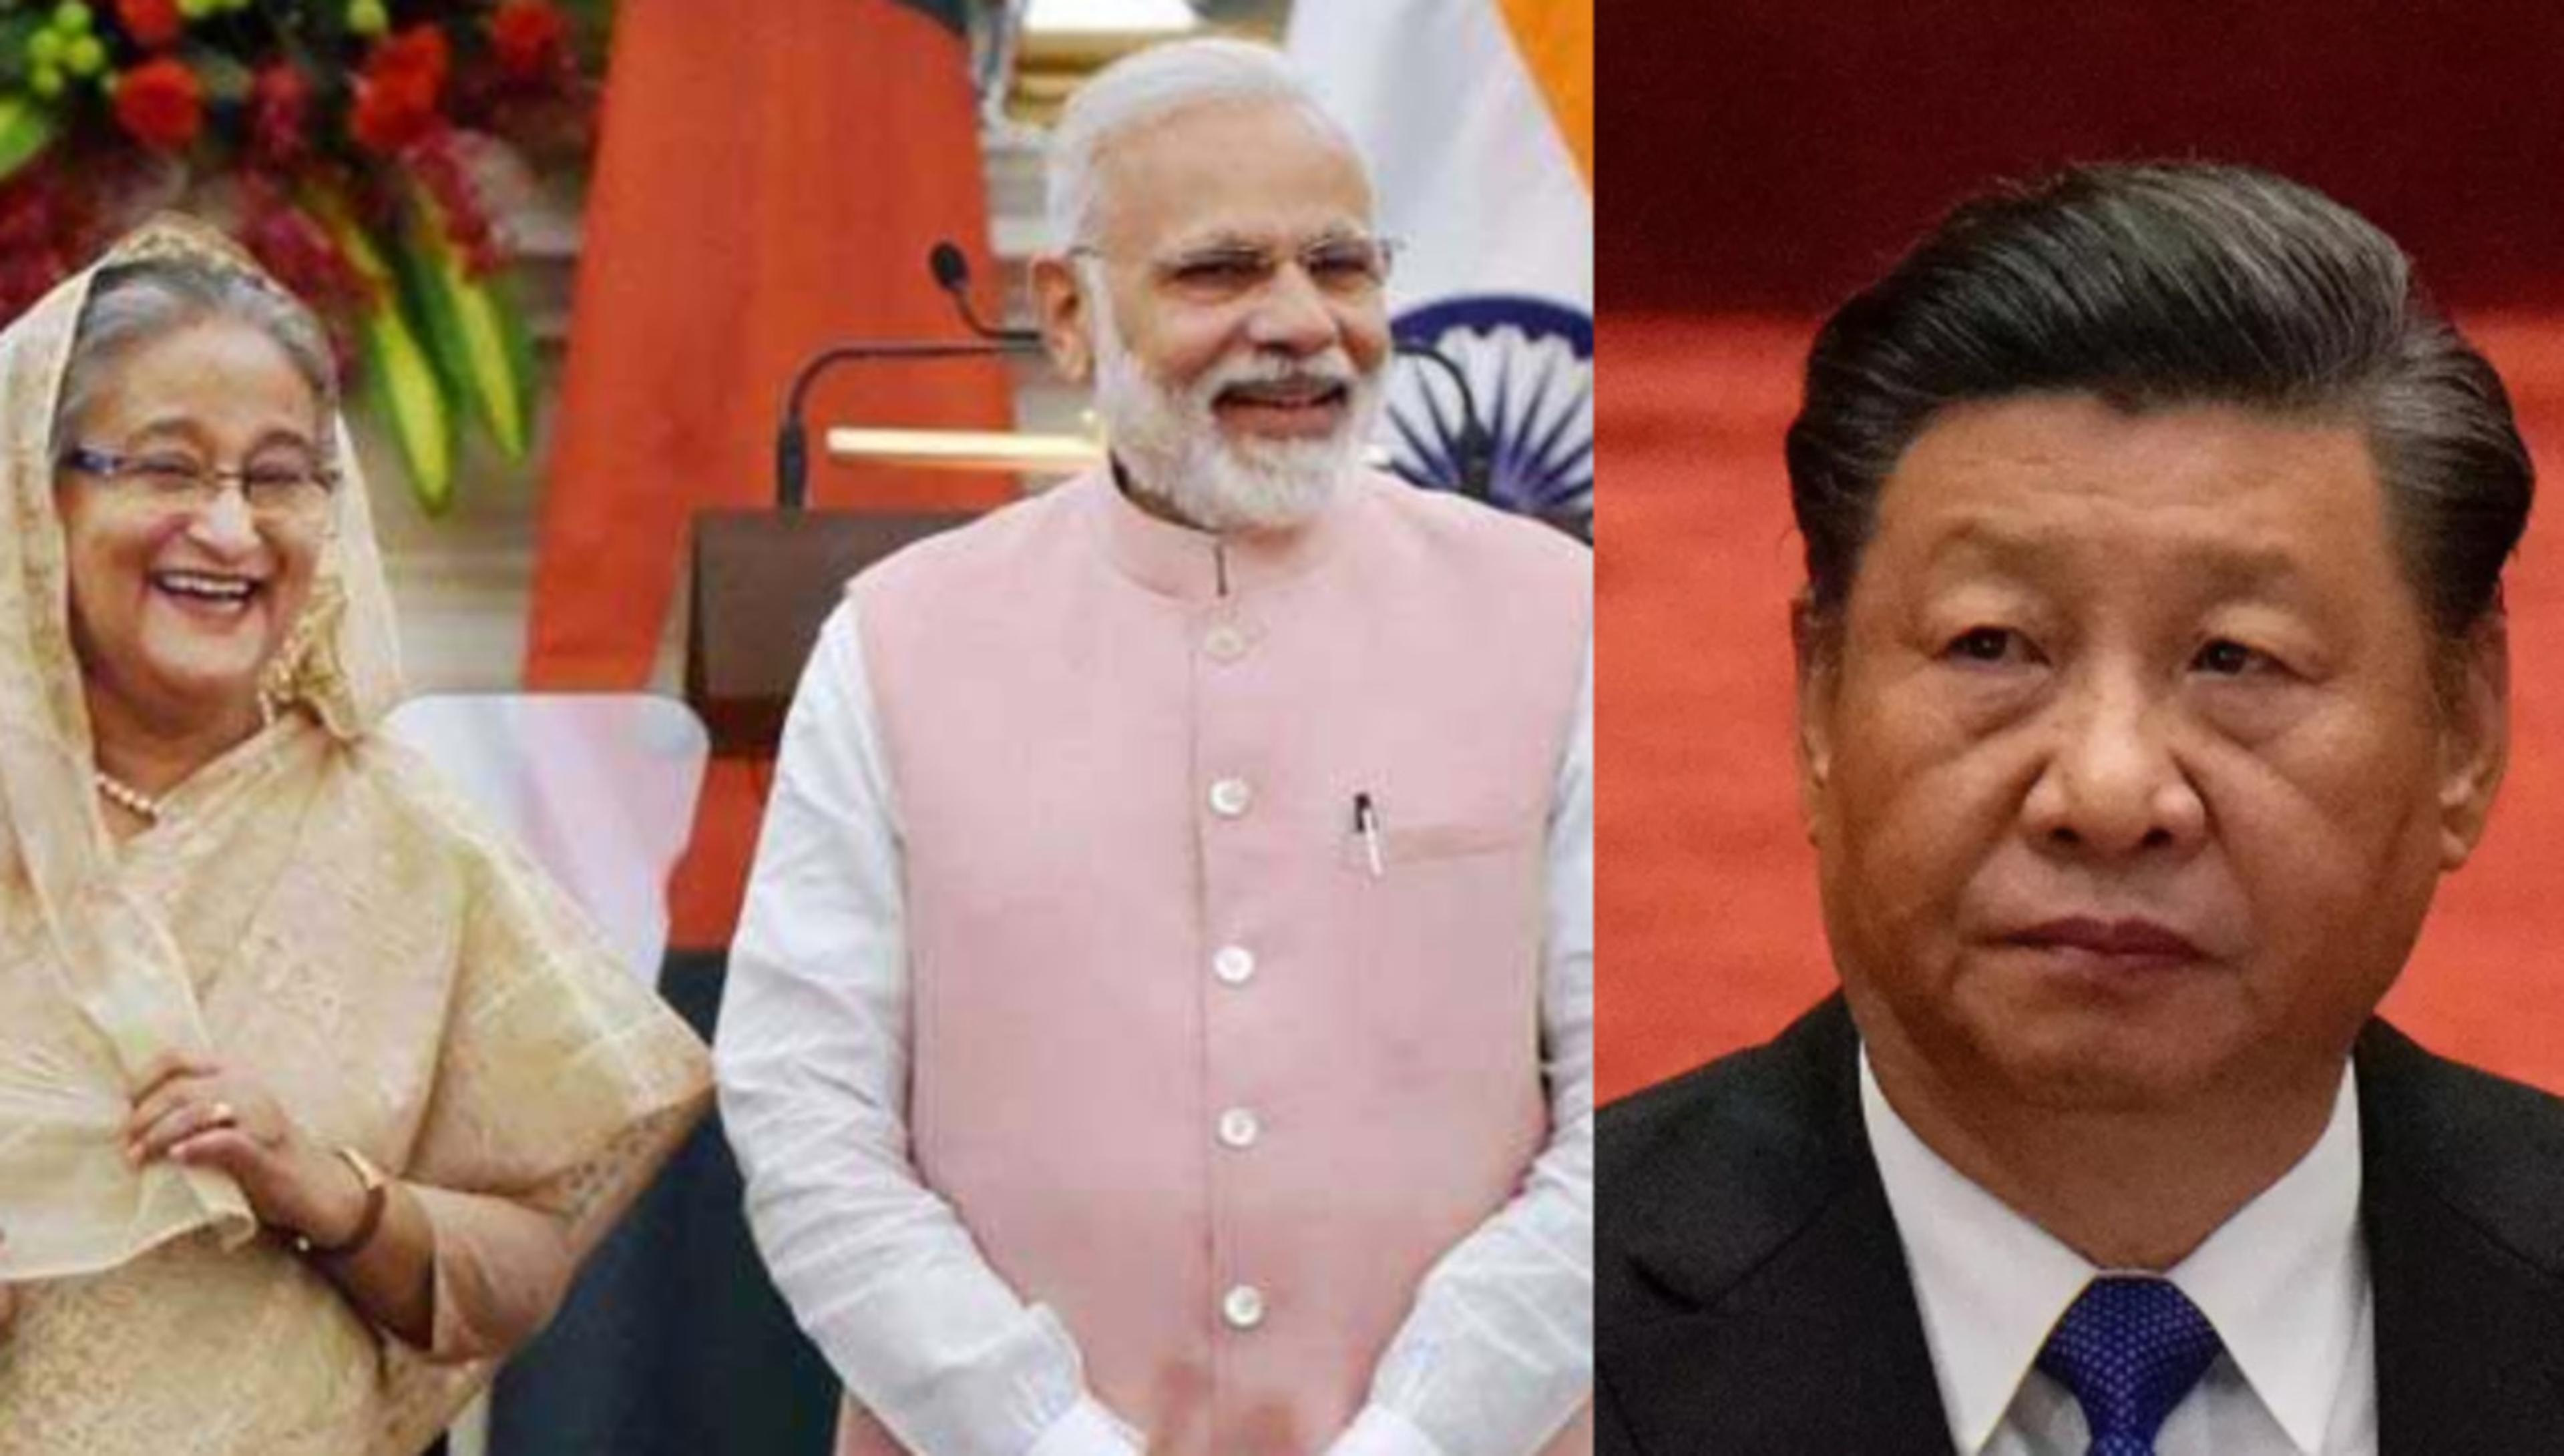 भारत की बांग्लादेश में चीन को झटका देने की तैयारी, ड्रैगन के हाथ से फिसल सकता है
यह प्रोजेक्ट..